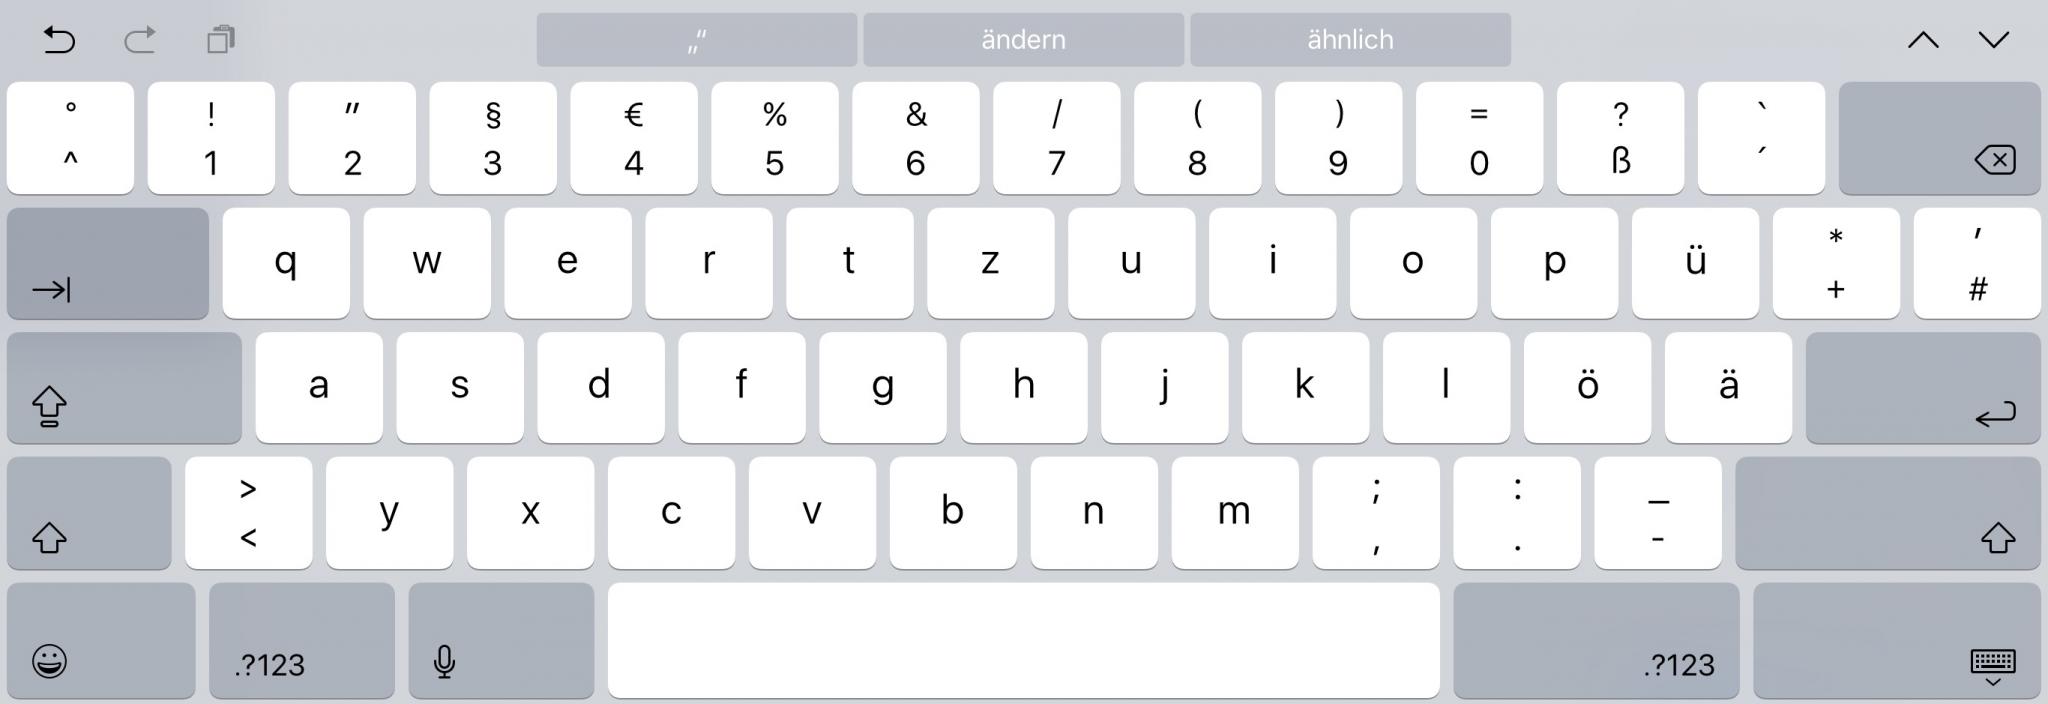 Das größere Bildschirm-Keyboard erlaubt echtes Schreiben.